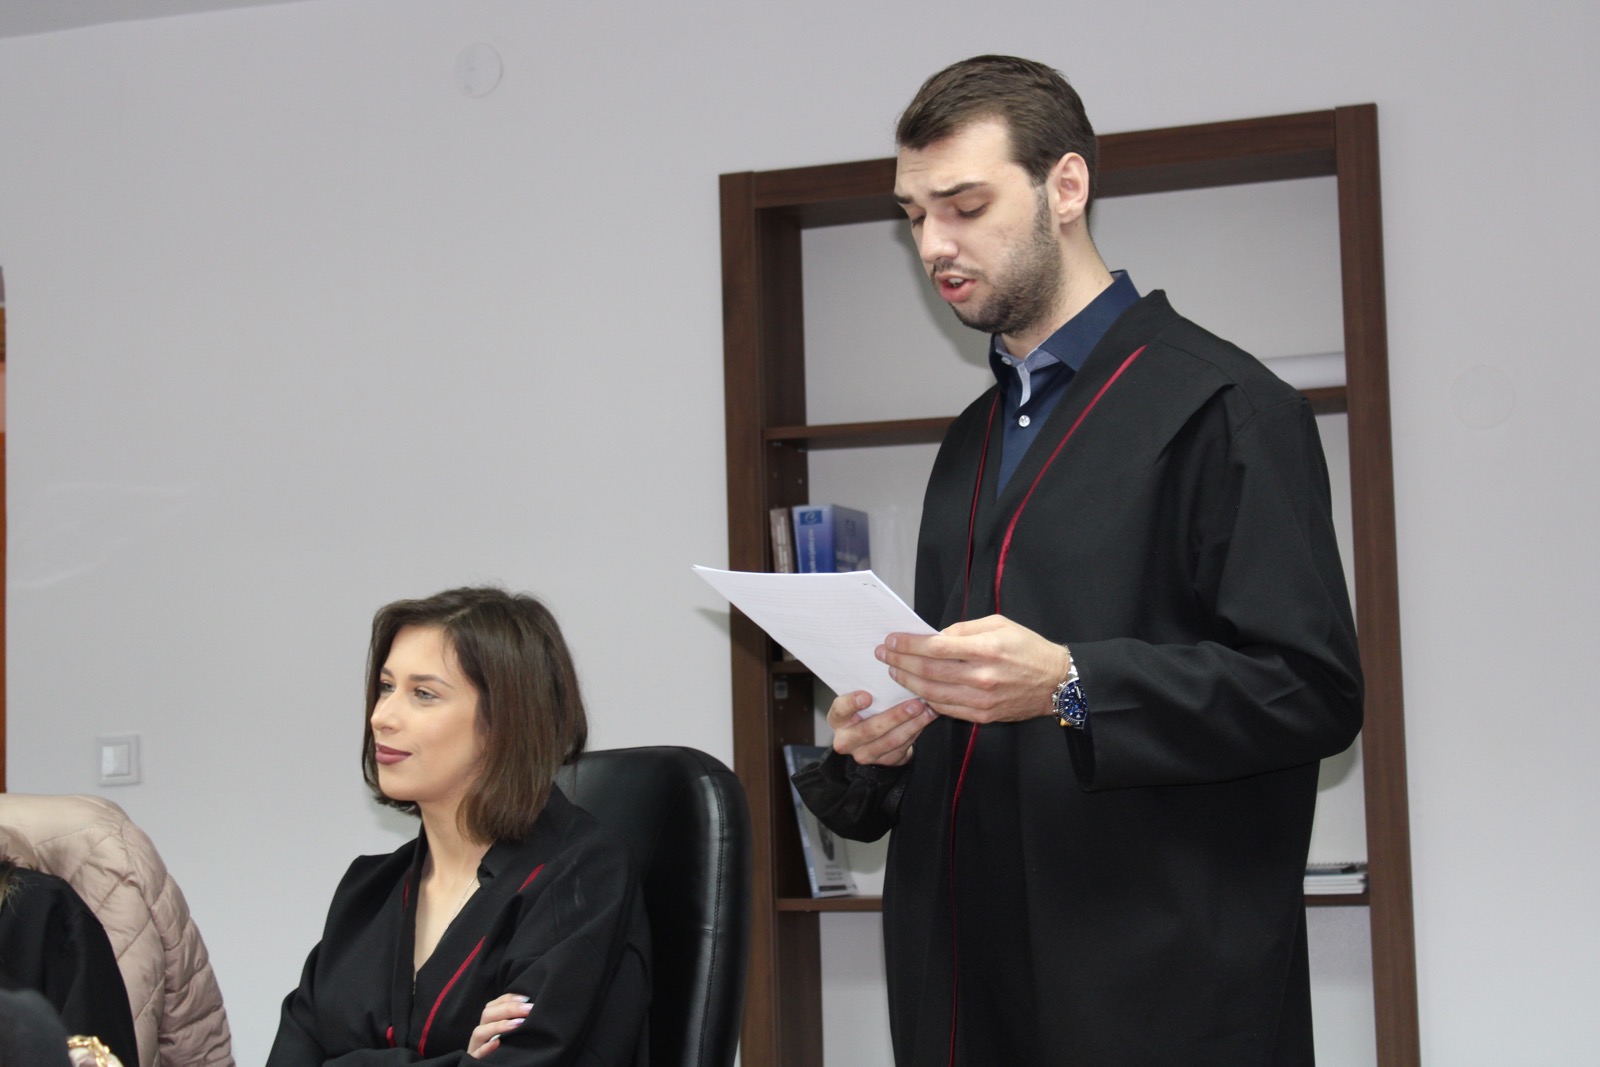 Održana završna simulacija suđenja za studente Pravnog fakulteta Univerziteta u Tuzli